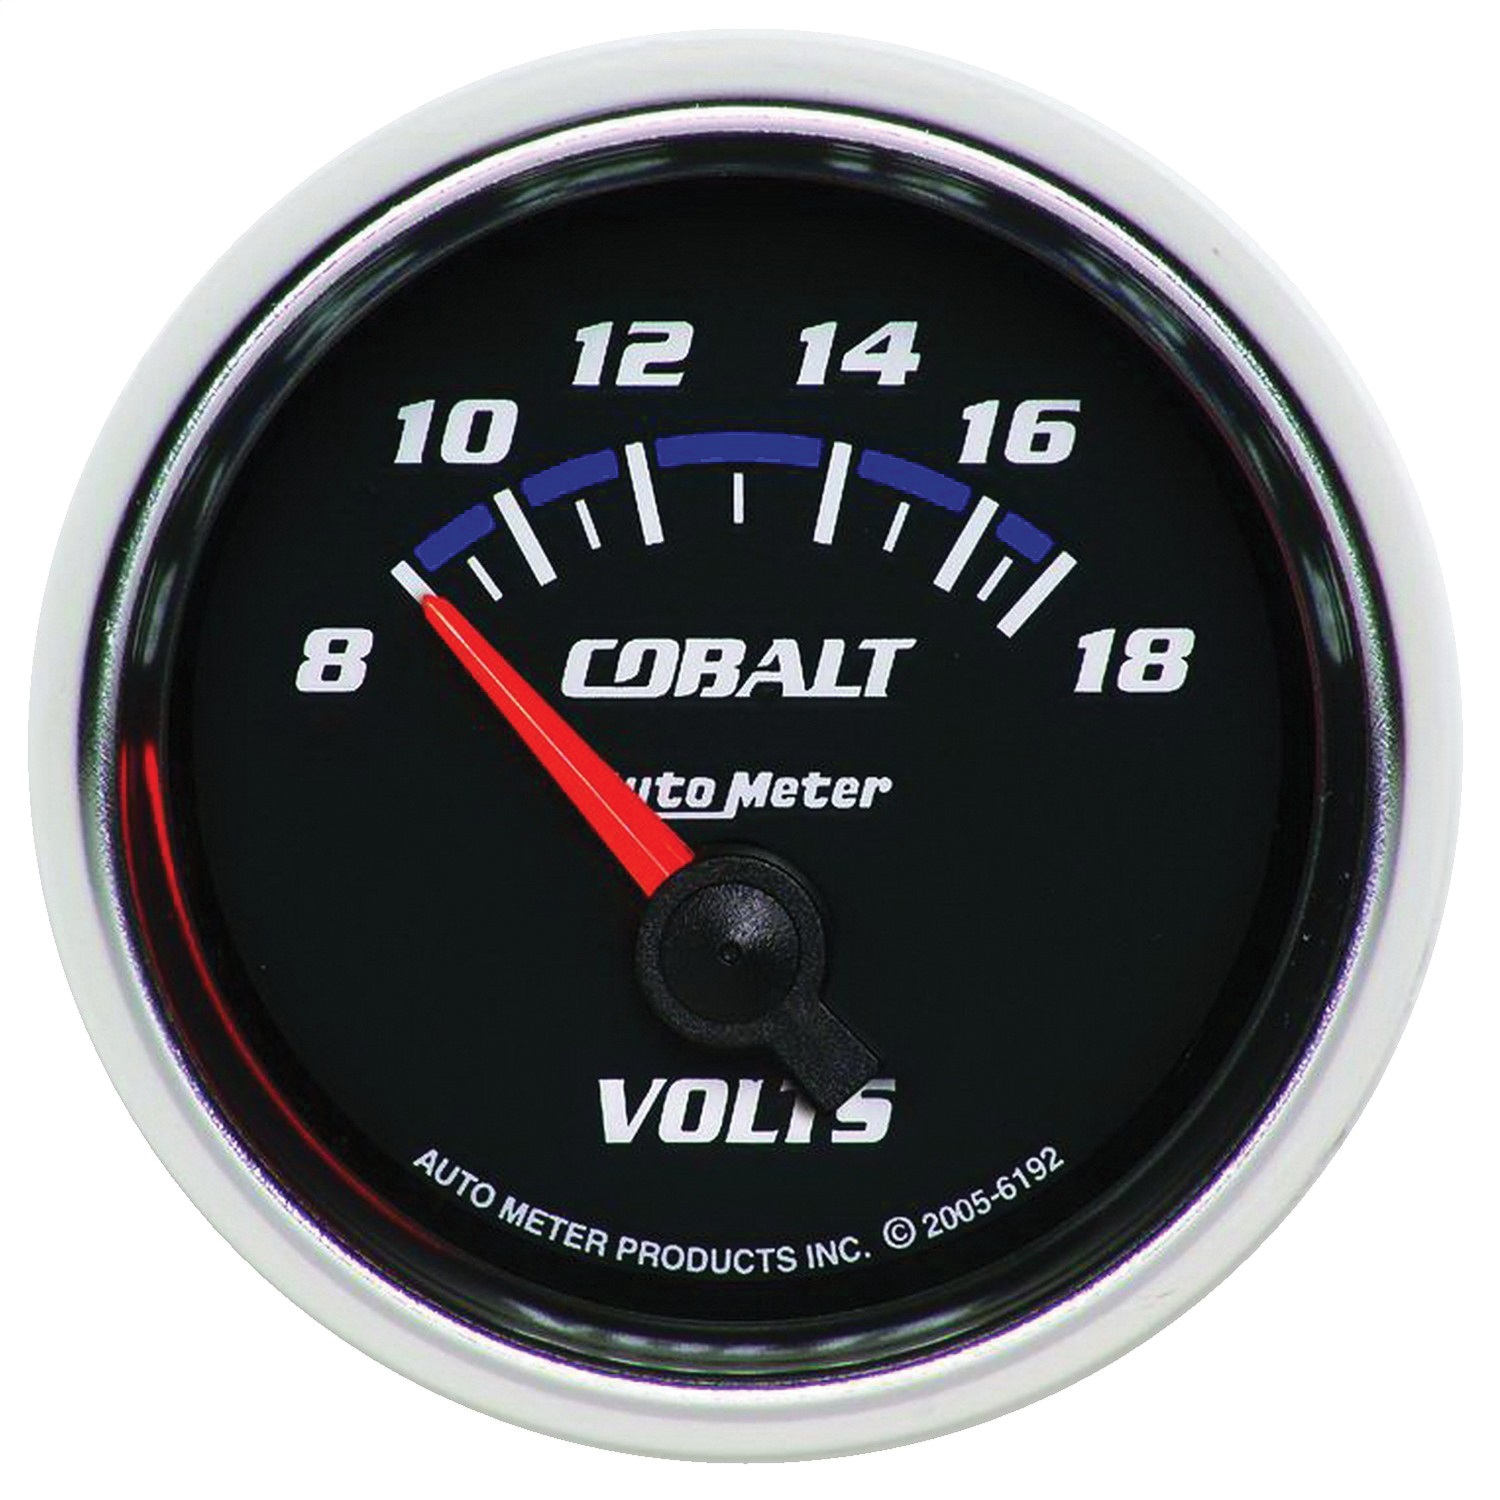 Auto Meter Auto Meter 6192 Cobalt; Electric Voltmeter Gauge